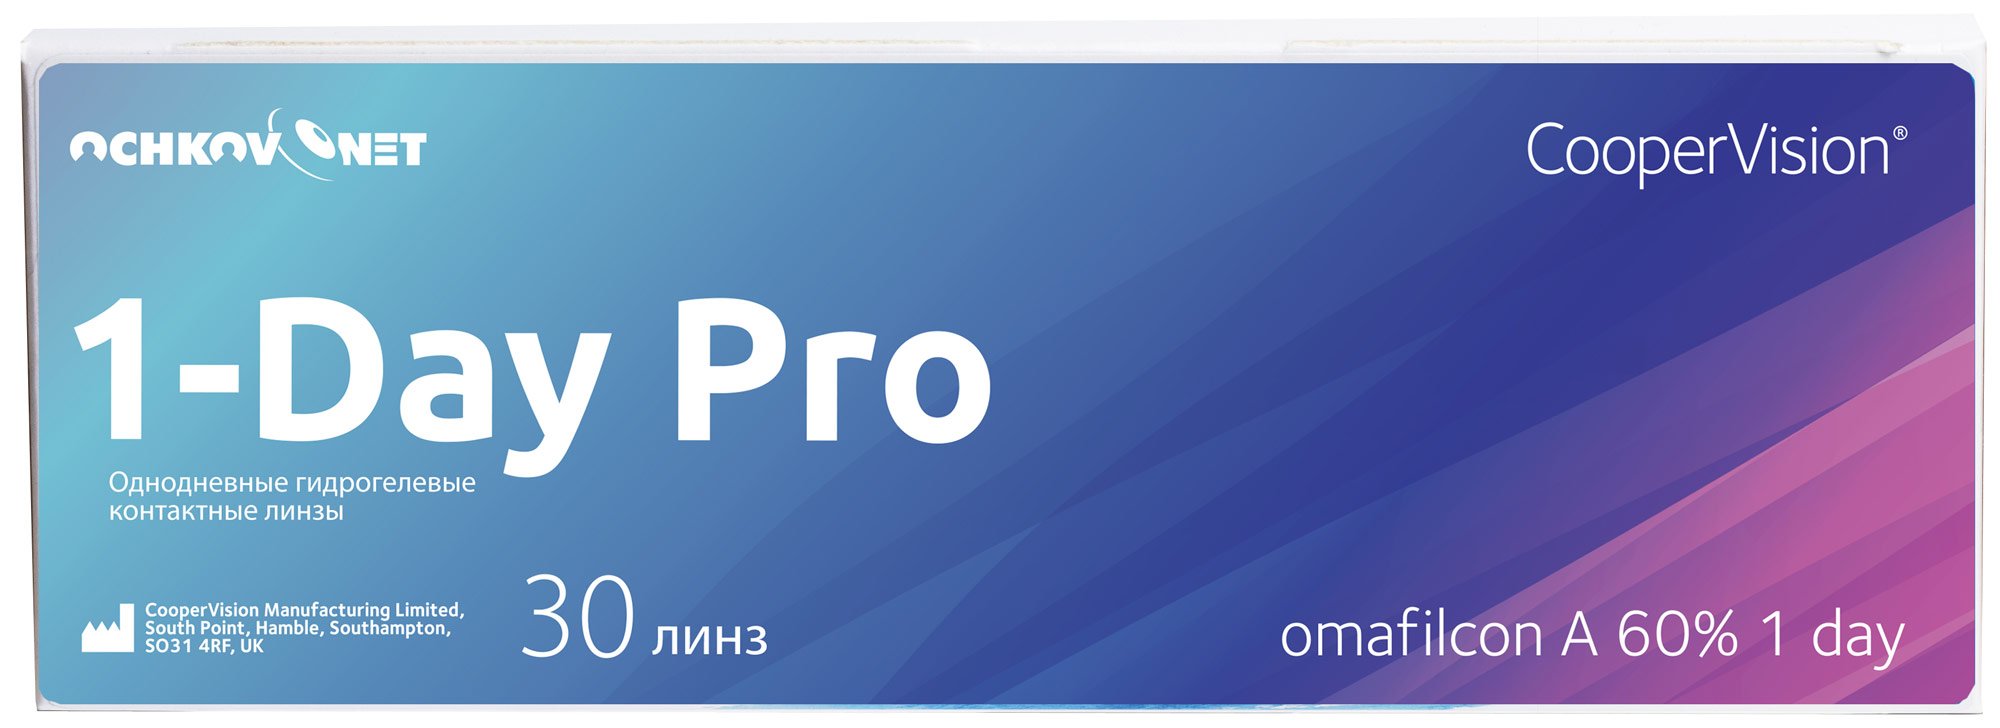 Купить Контактные линзы Ochkov.Net 1-Day Pro 30 линз 8.7, -1